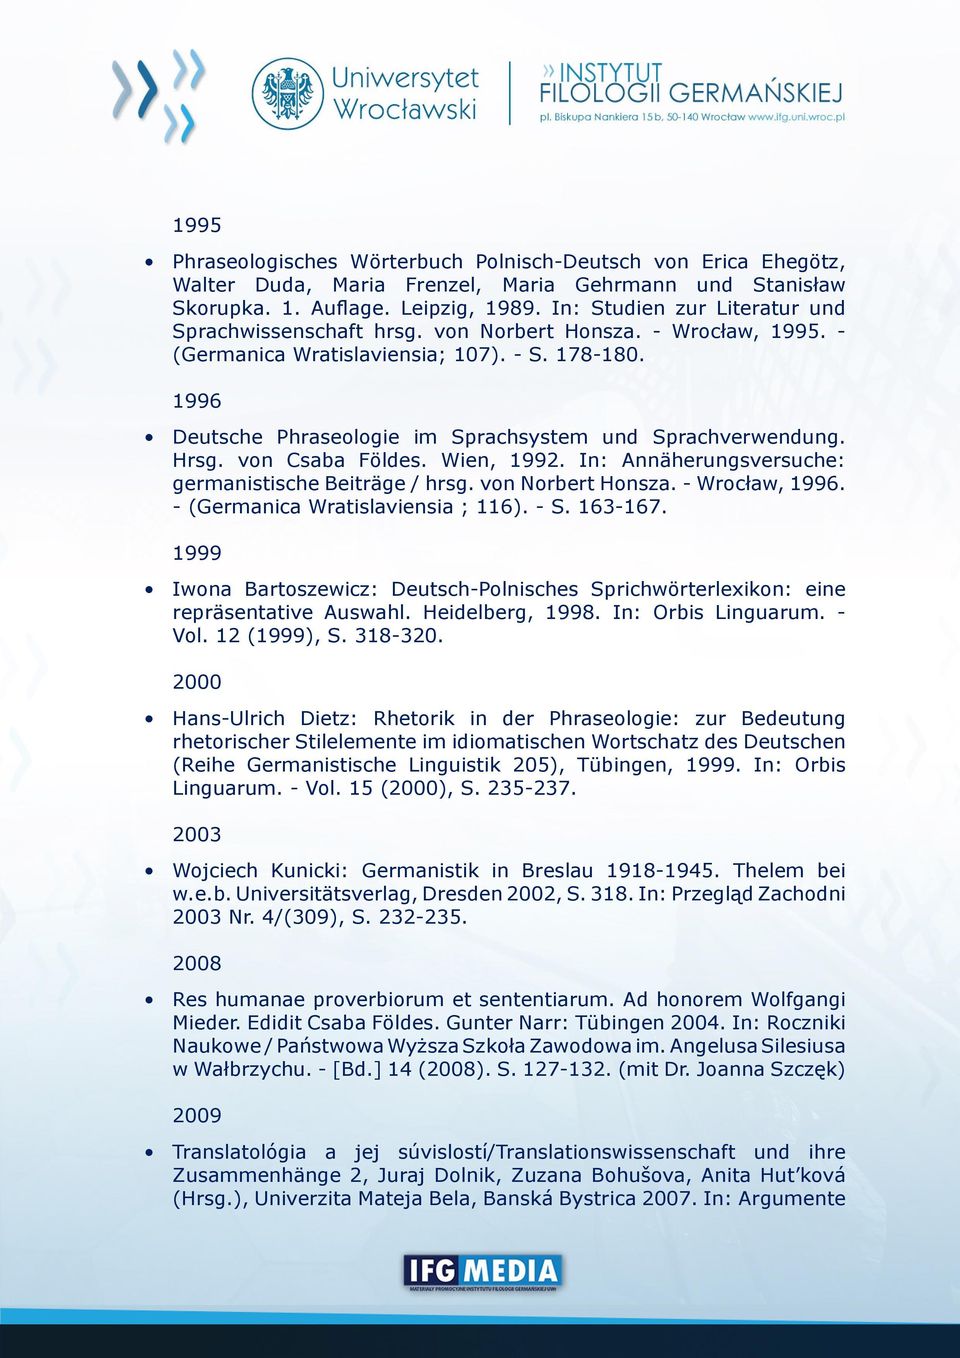 1996 Deutsche Phraseologie im Sprachsystem und Sprachverwendung. Hrsg. von Csaba Földes. Wien, 1992. In: Annäherungsversuche: germanistische Beiträge / hrsg. von Norbert Honsza. - Wrocław, 1996.